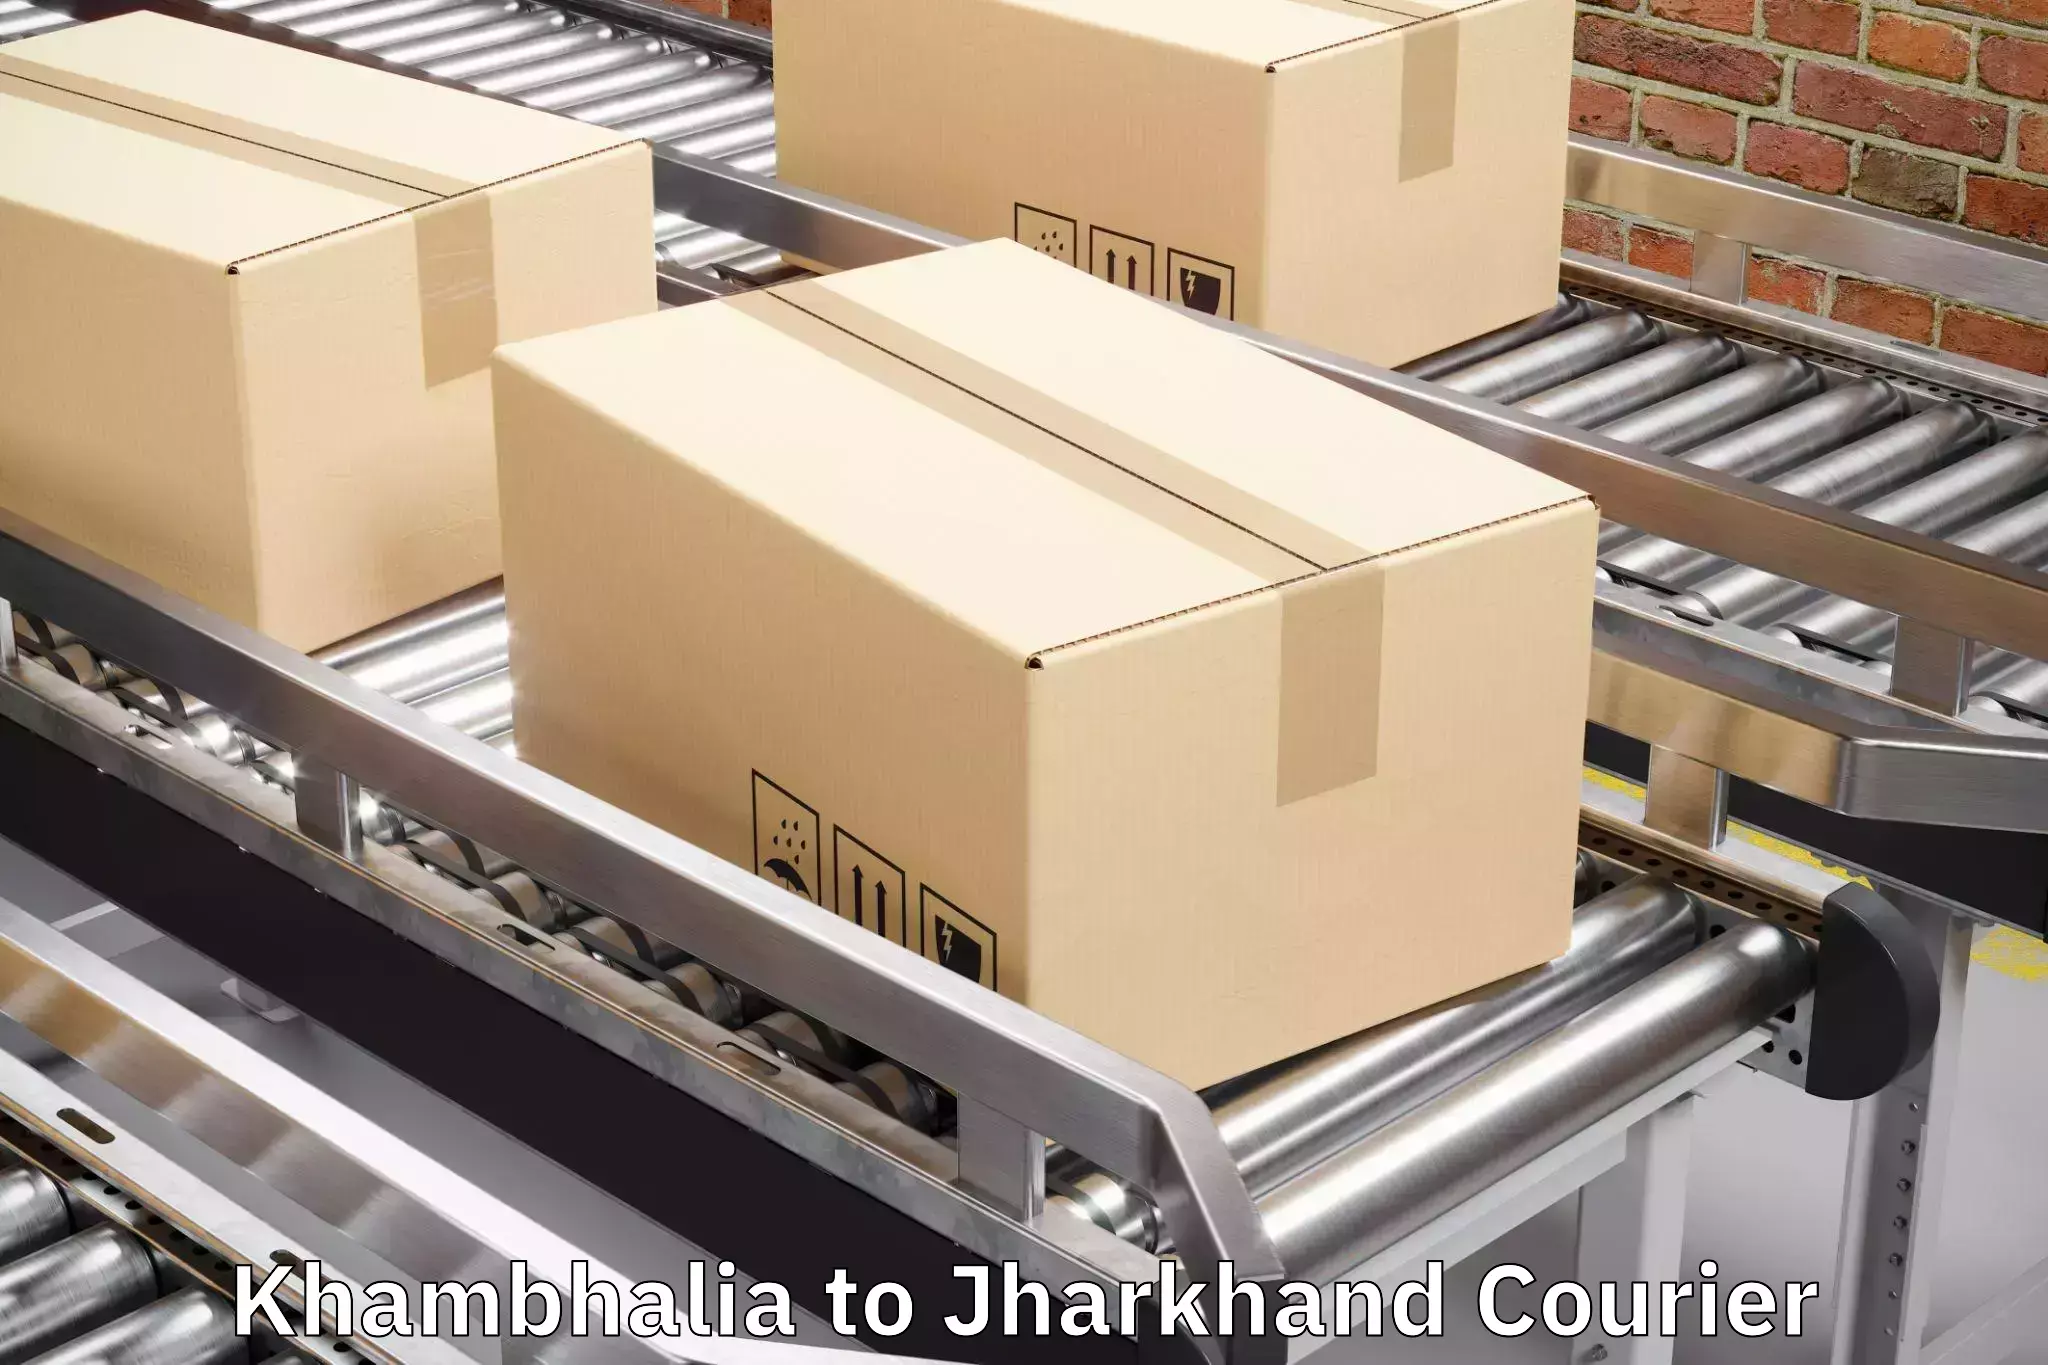 Baggage shipping advice Khambhalia to Simdega